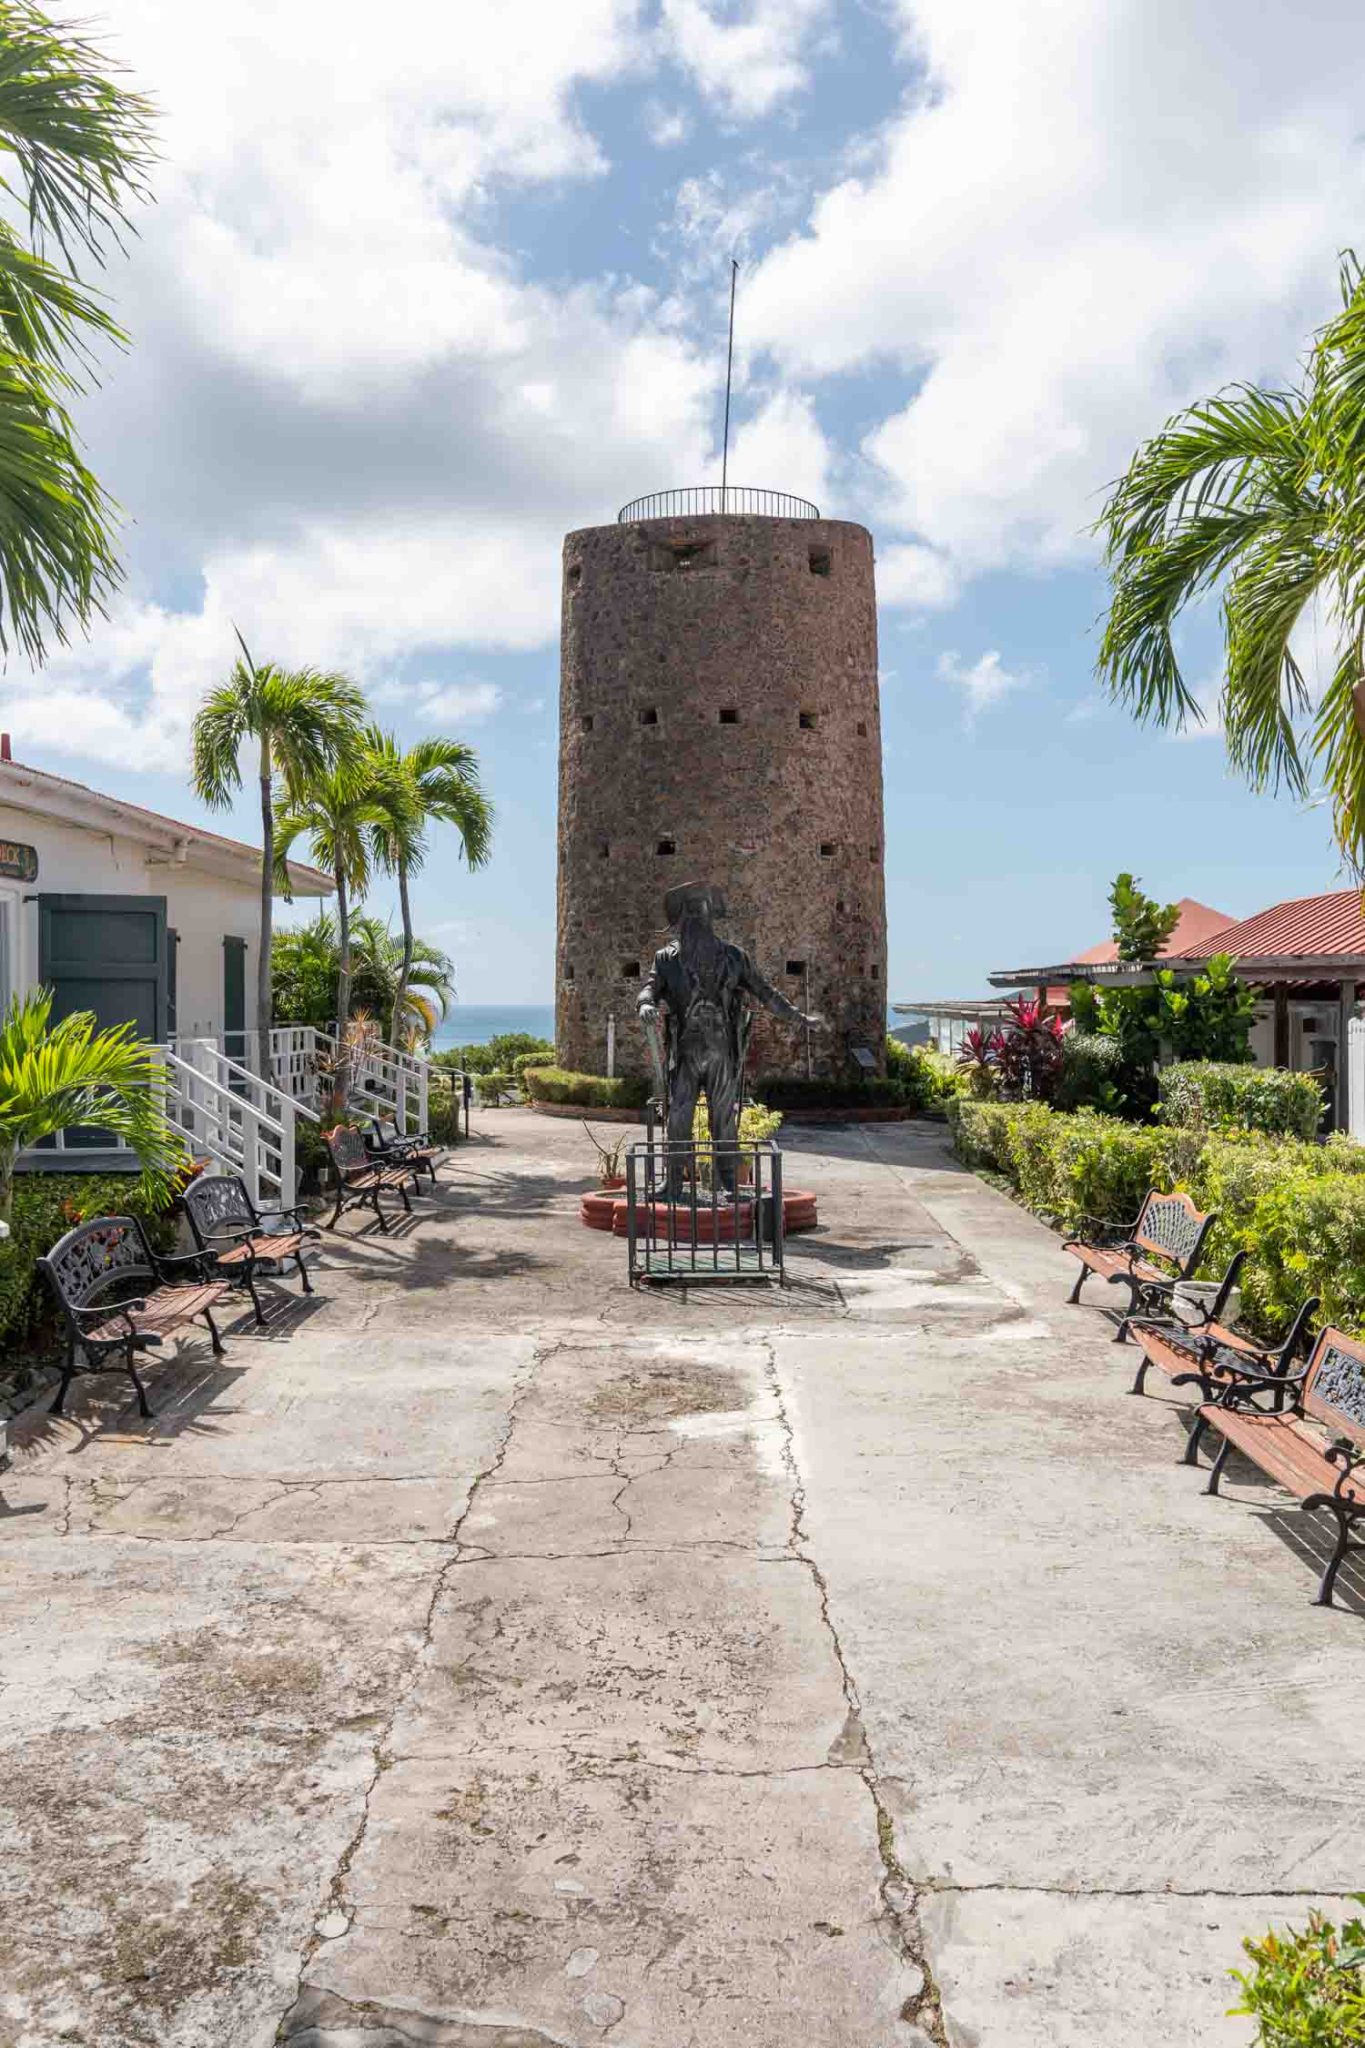 Blackbeard's tower in Charlotte Amalie.